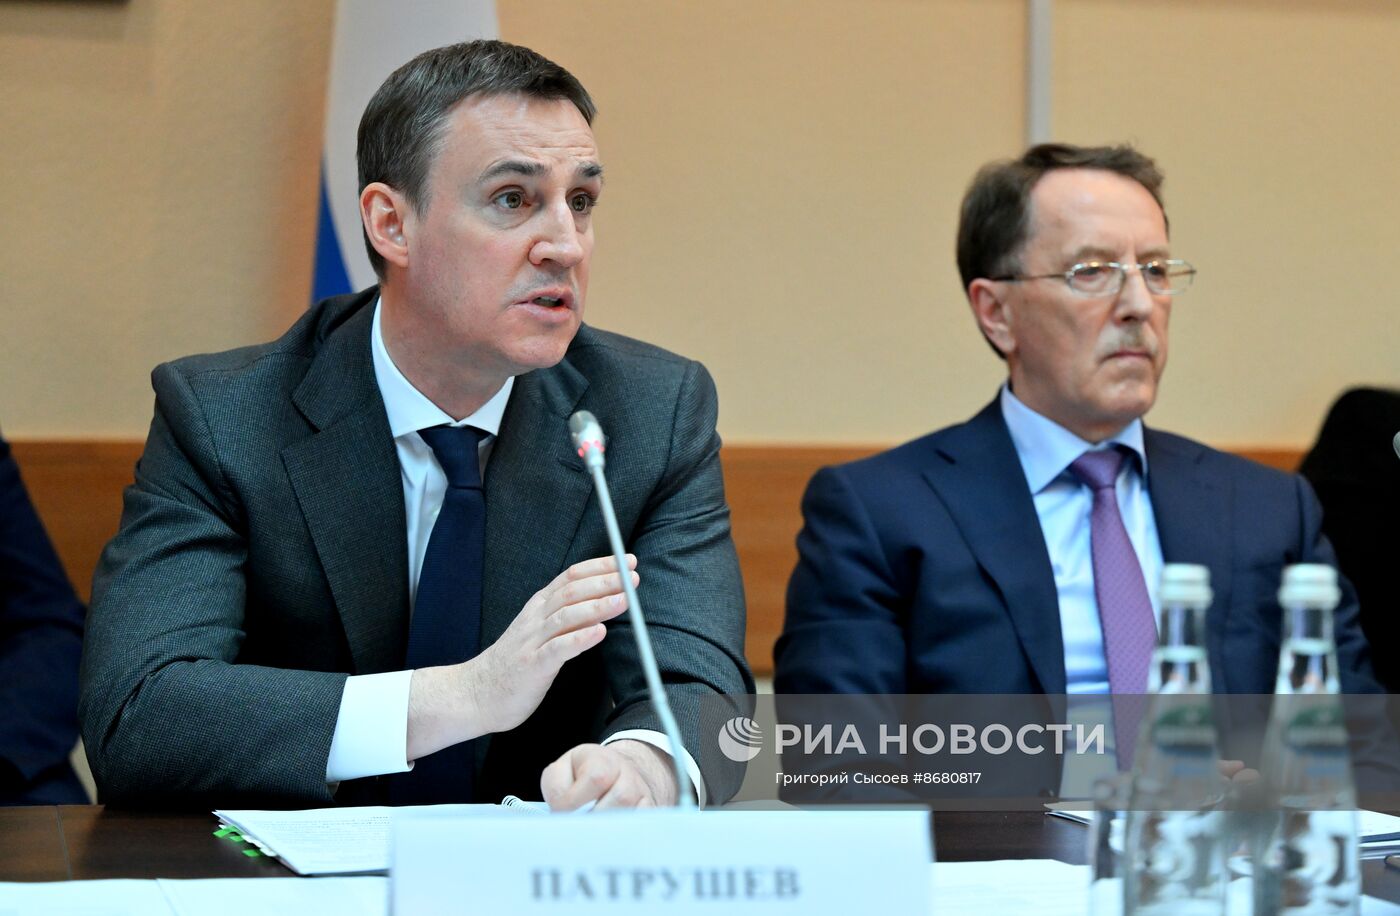 Комитеты Госдумы проводят встречи с кандидатами на должности министров в новом правительстве